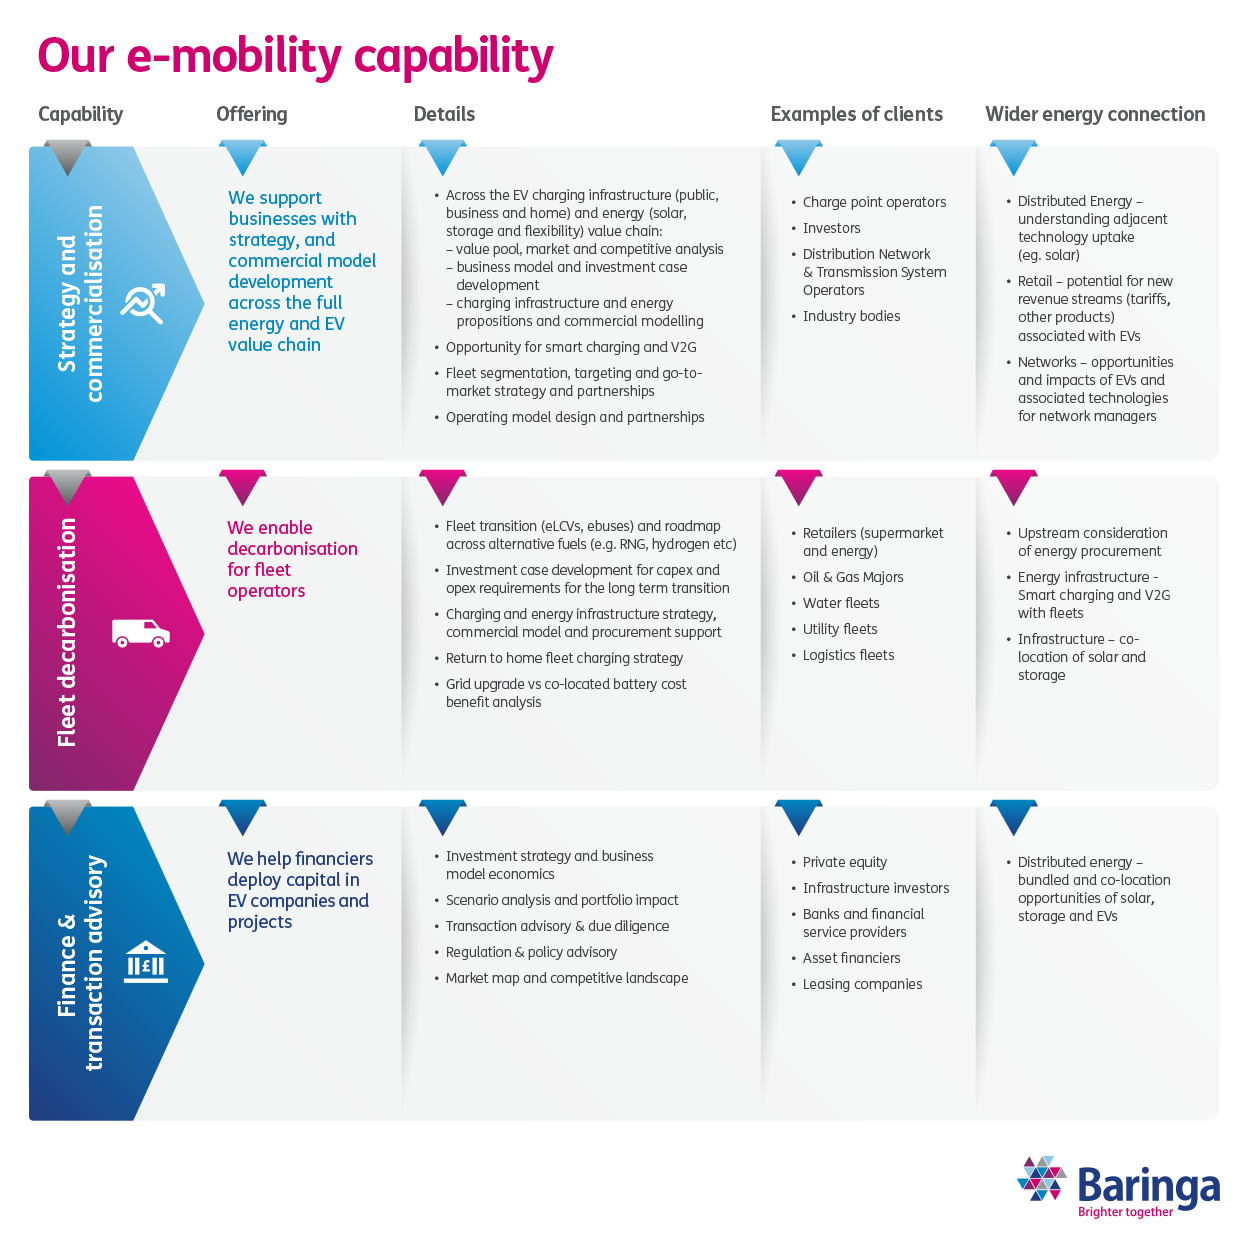 Our e-mobility capability